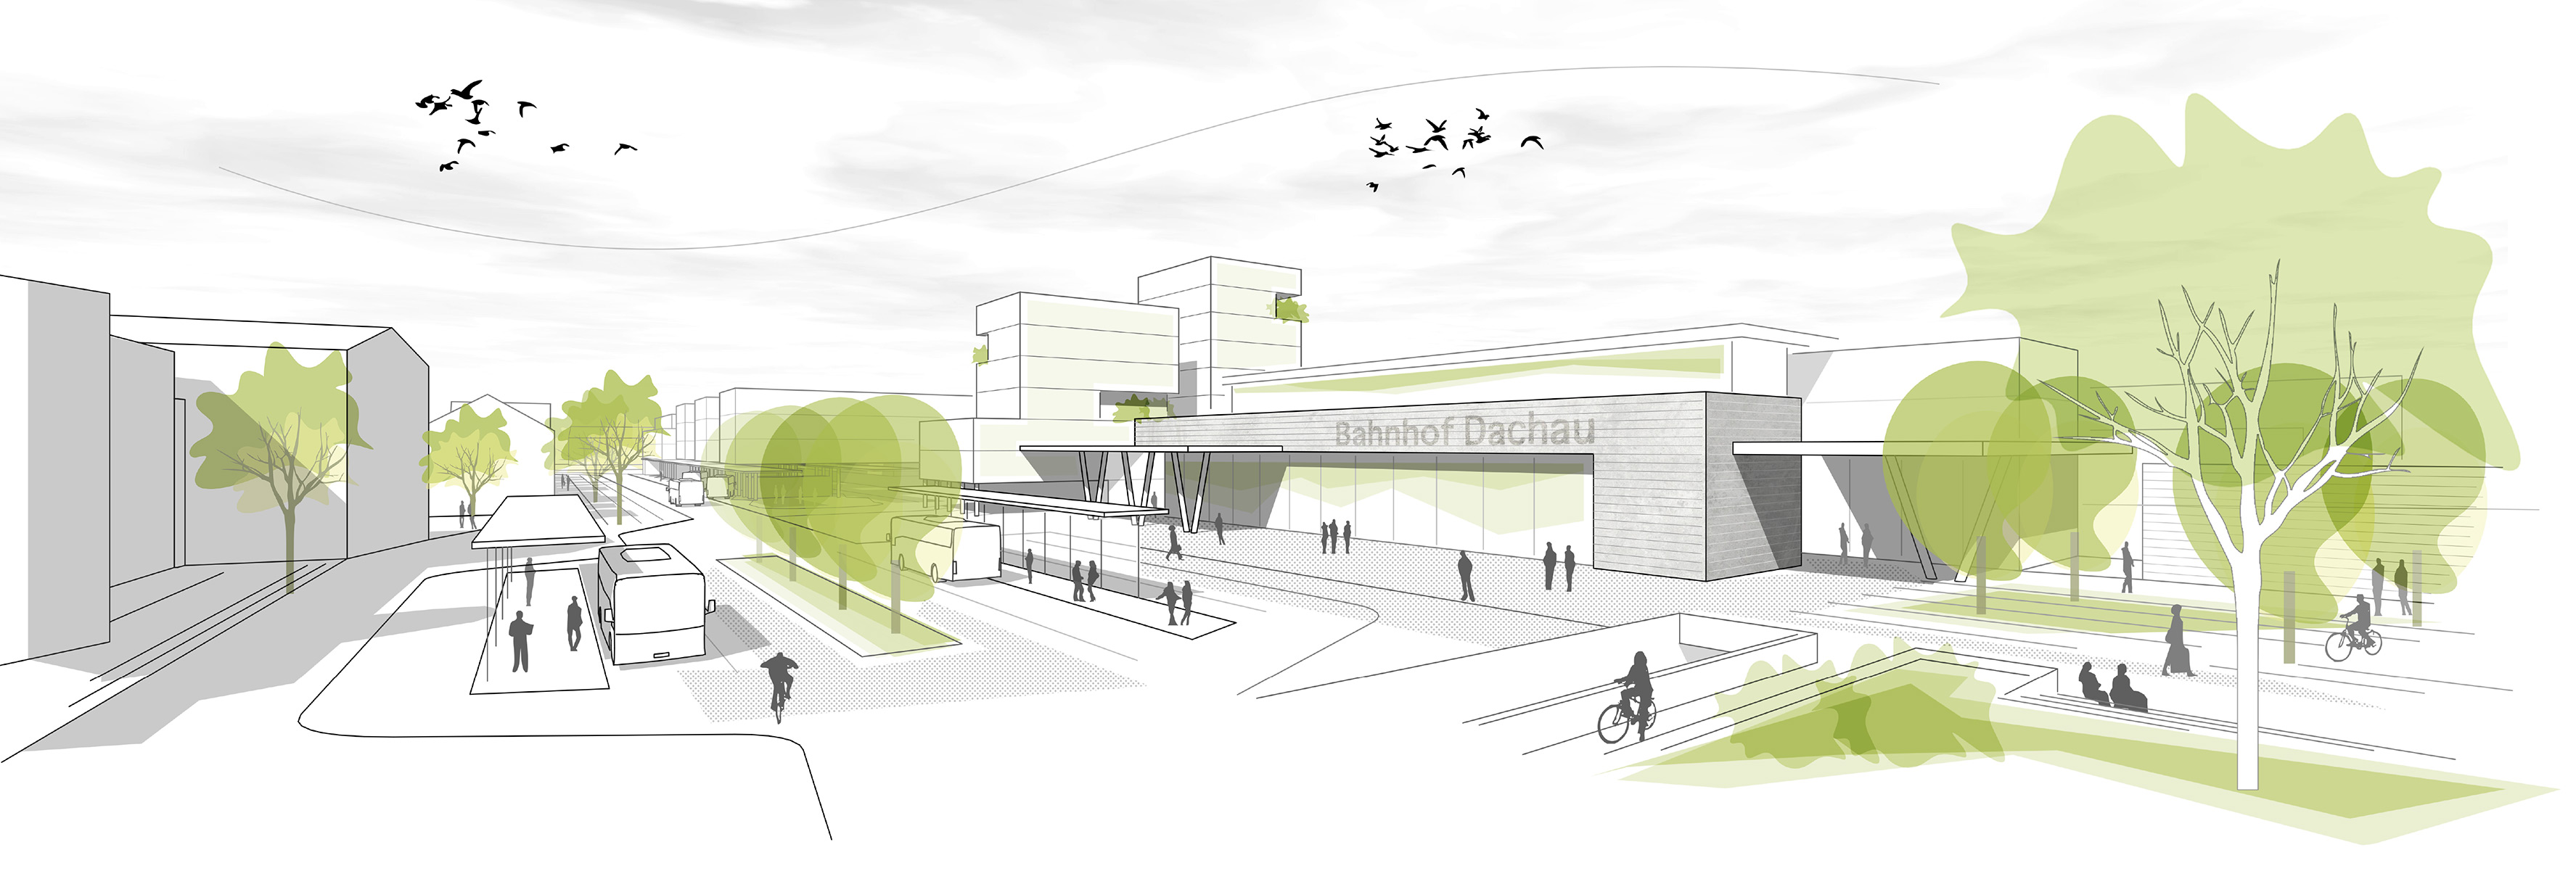 Städtebaulicher Ideenwettbewerb Bahnhof Dachau Perspektive